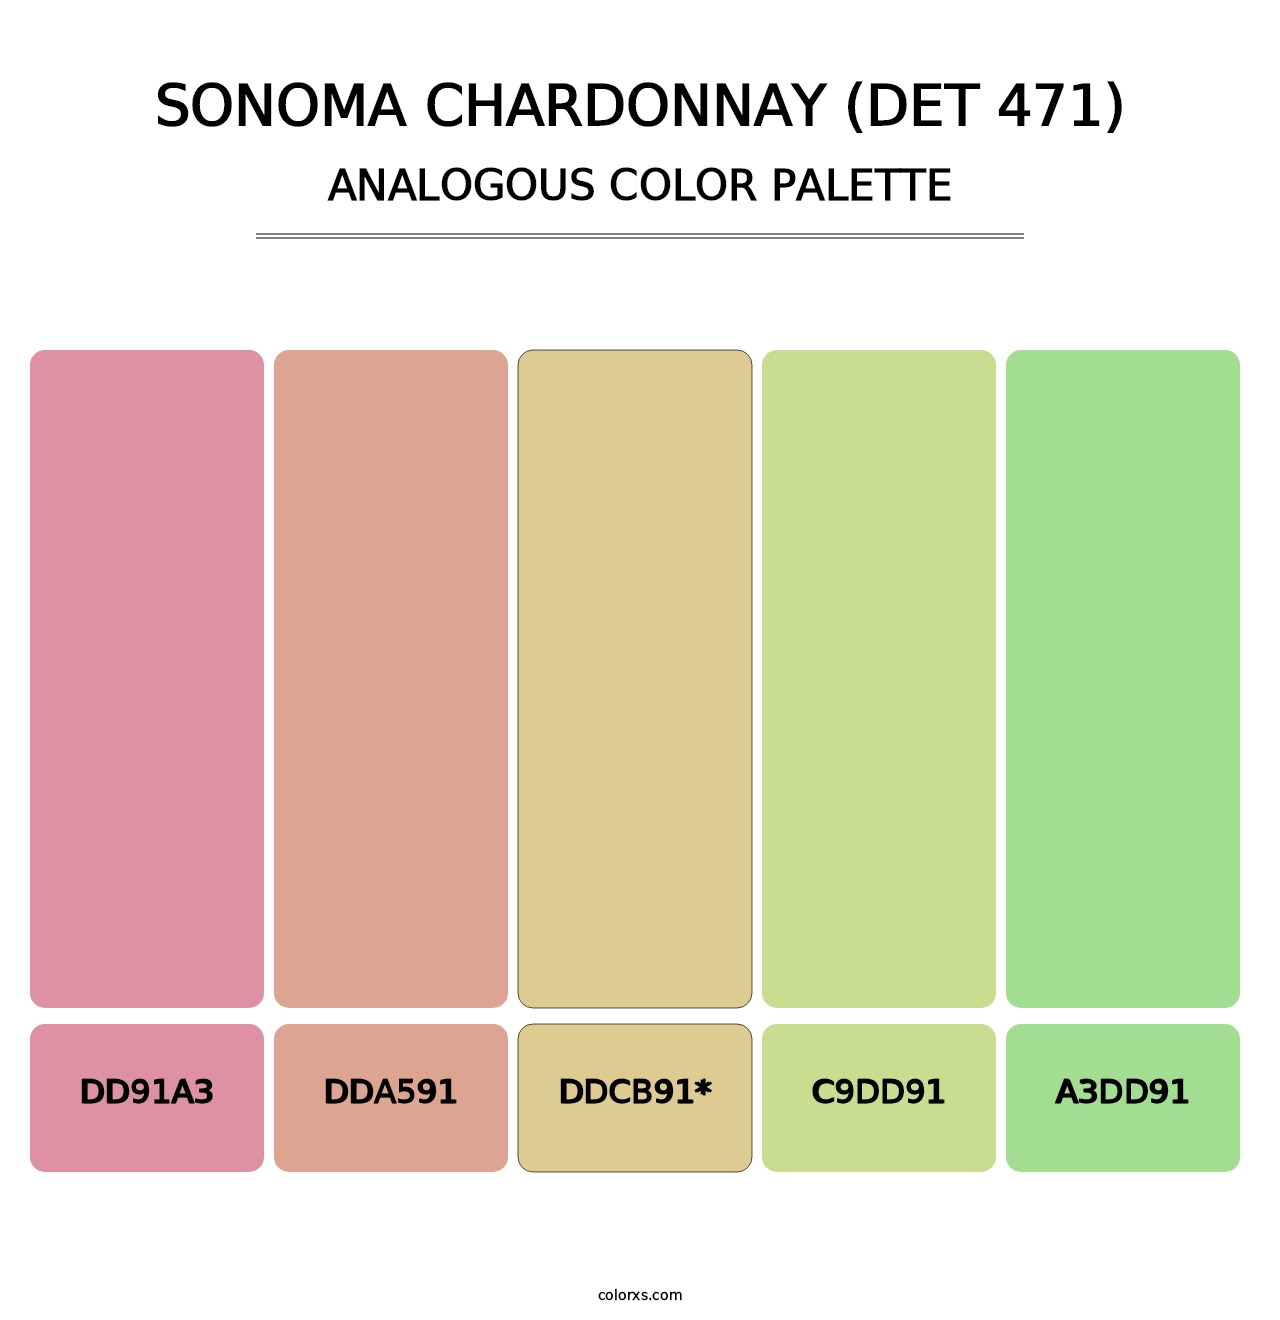 Sonoma Chardonnay (DET 471) - Analogous Color Palette